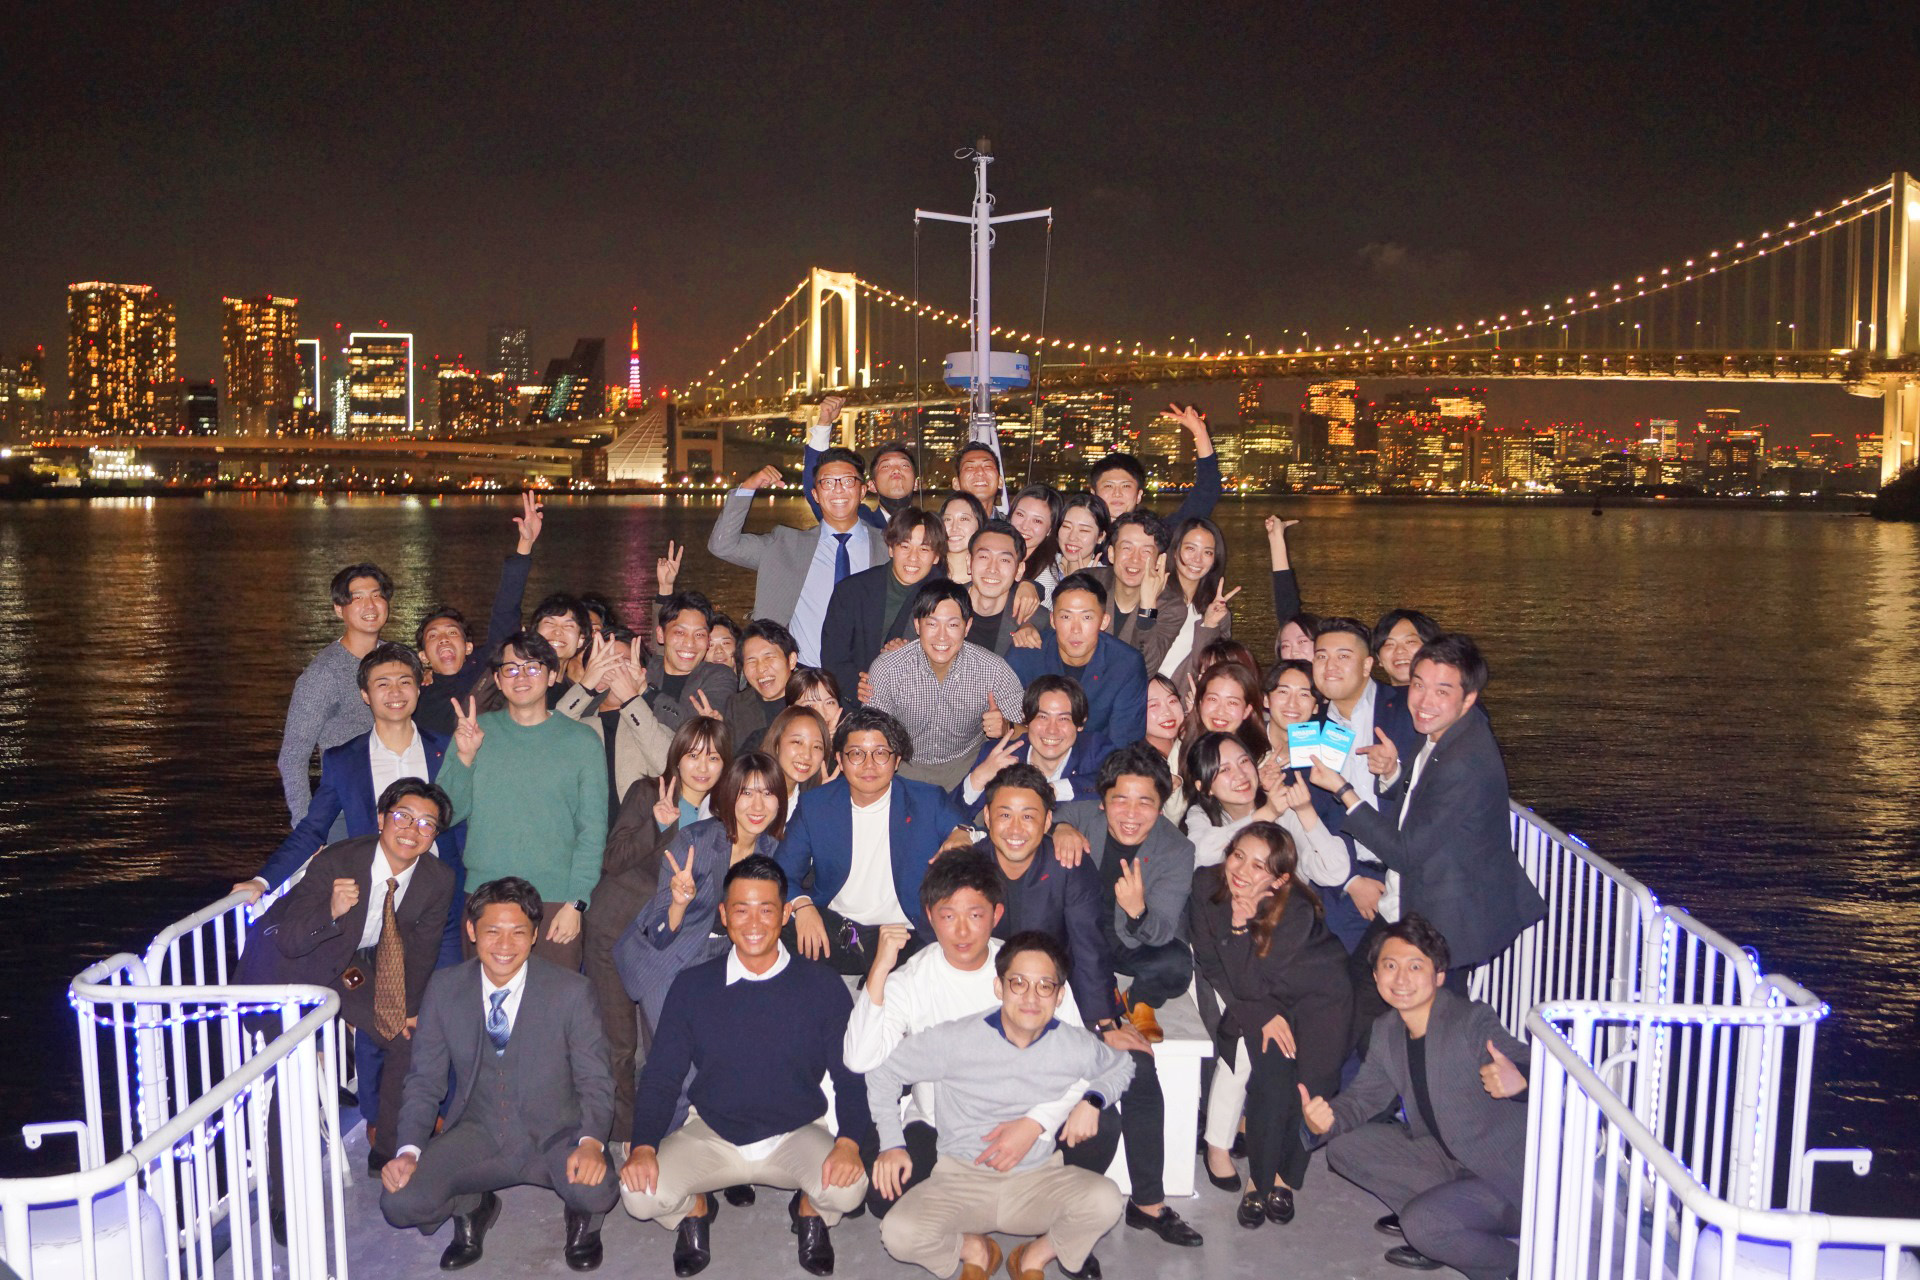 ルーカス号のデッキで集合写真を撮影する。背景にはレインボーブリッジなど東京湾の夜景が広がる。